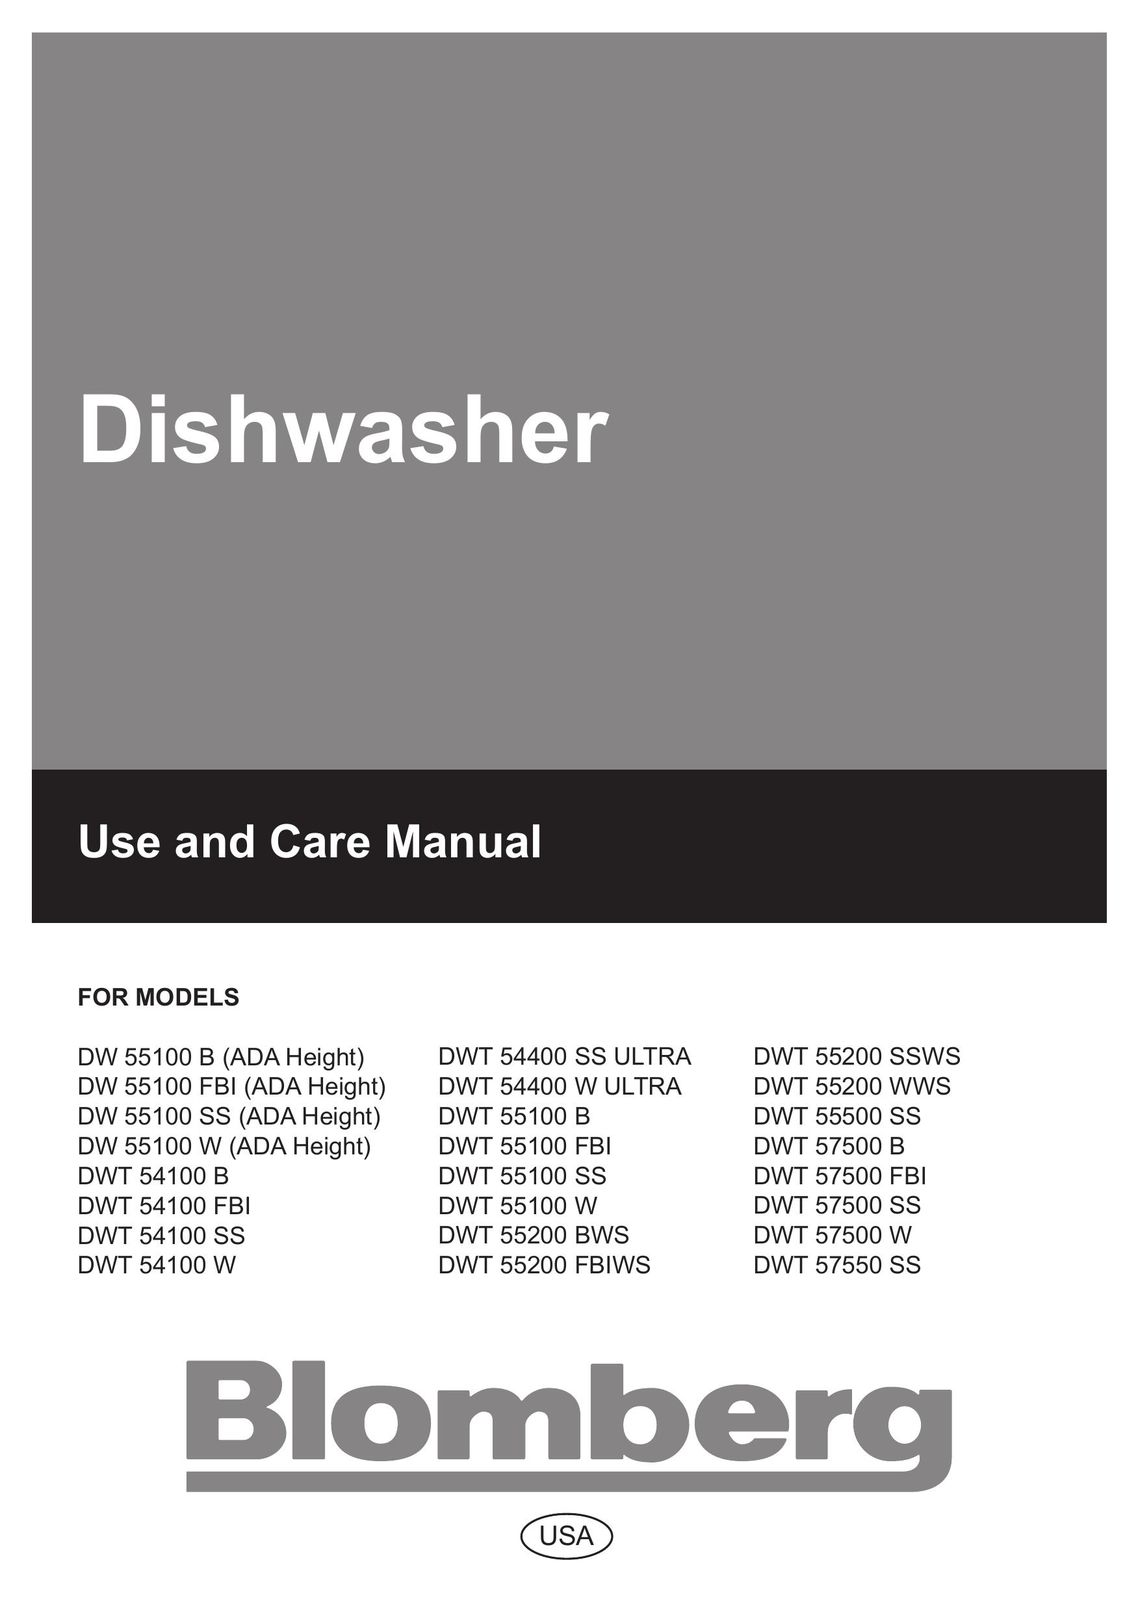 Blomberg DW 54100 W Dishwasher User Manual